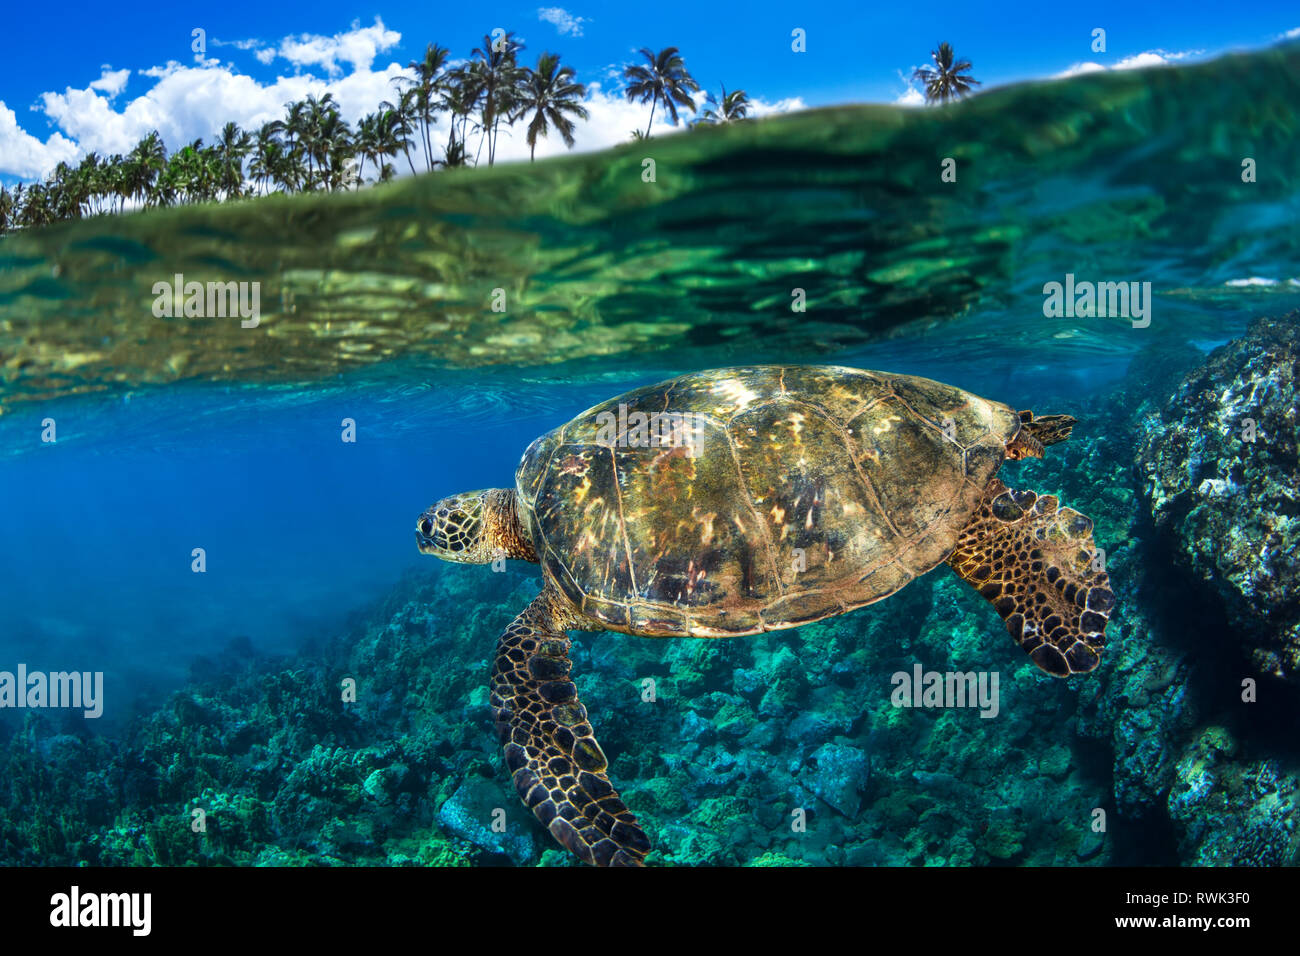 Geteilte Ansicht einer hawaiischen Grünen Meeresschildkröte (Chelonia mydas) Schwimmen im klaren, blauen Wasser, Makena, Maui, Hawaii, Vereinigte Staaten von Amerika Stockfoto